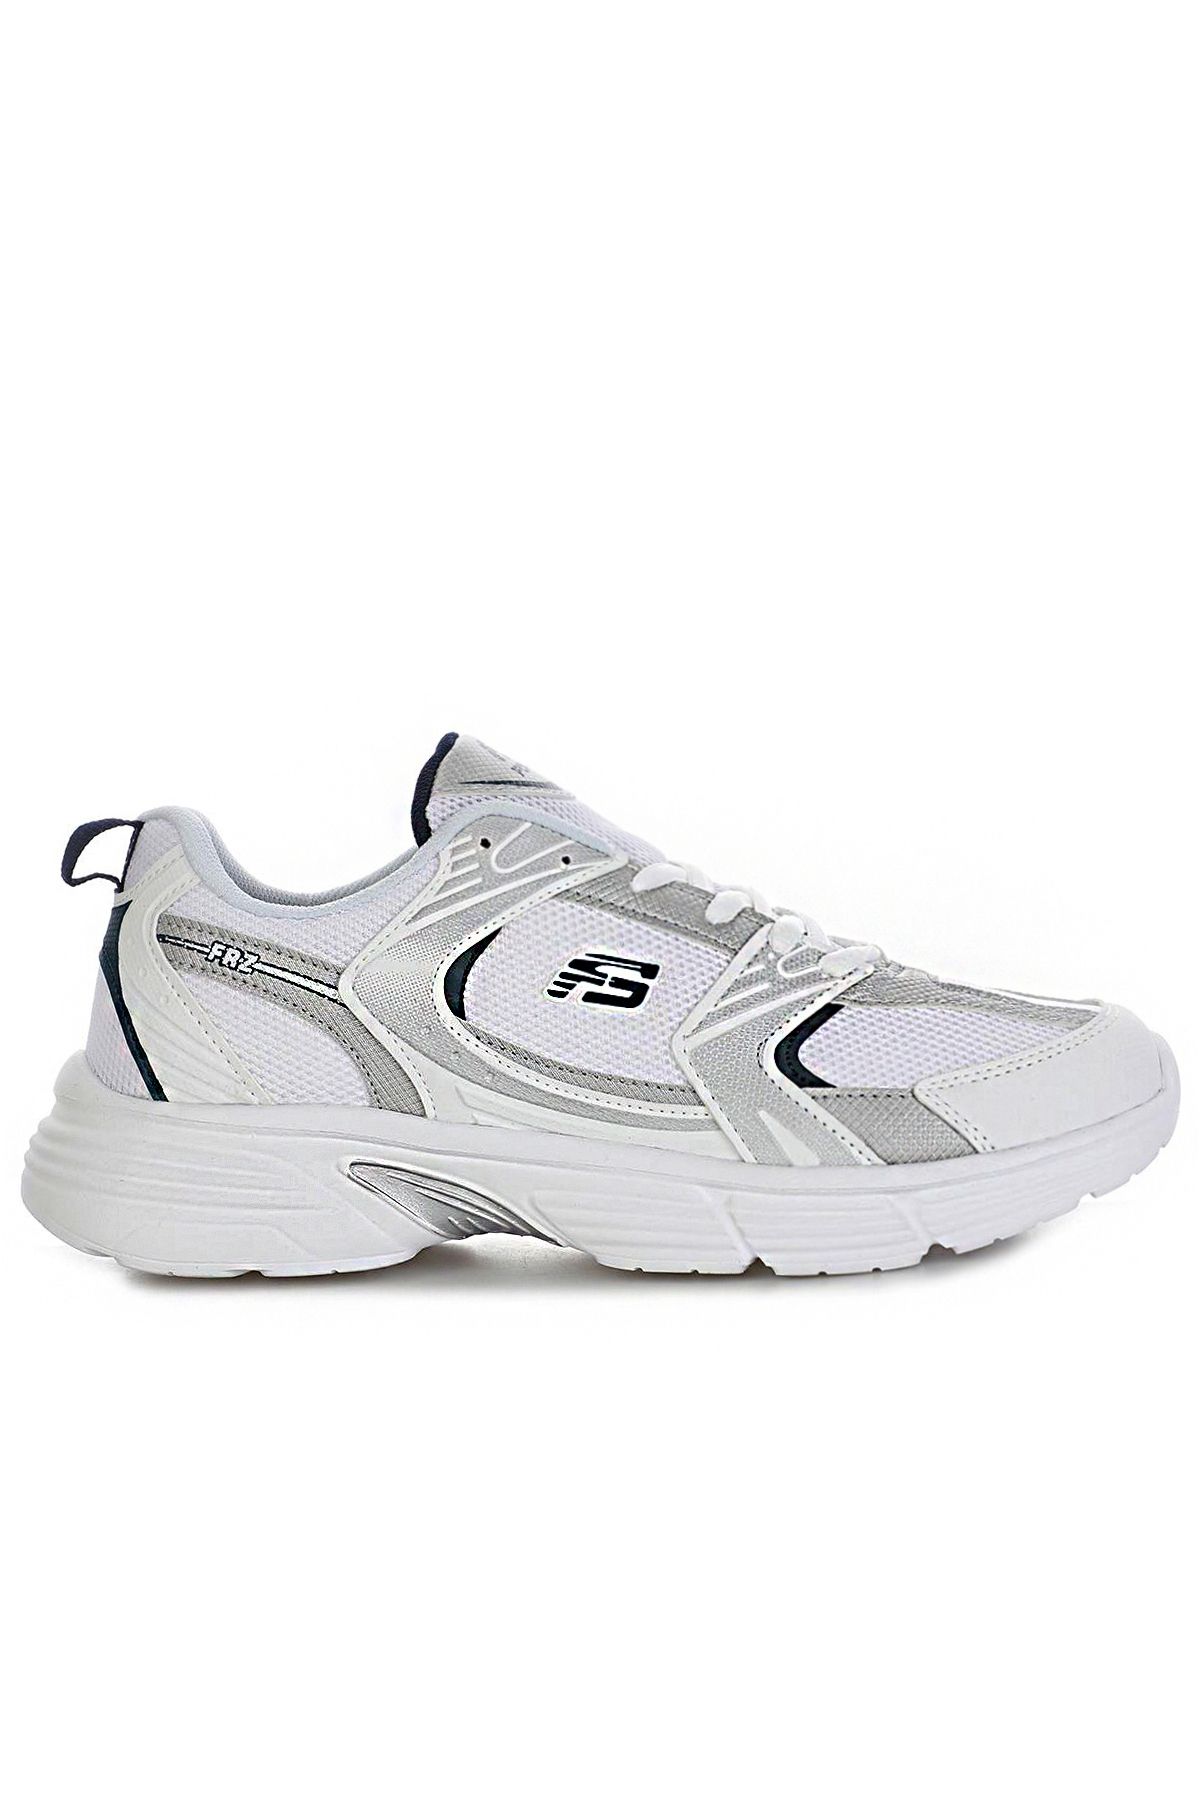 Freemax Unisex Ortopedik Garantili Çok Hafif Esnek Rahat Sneaker Konforlu Spor Ayakkabı Beyaz Gümüş